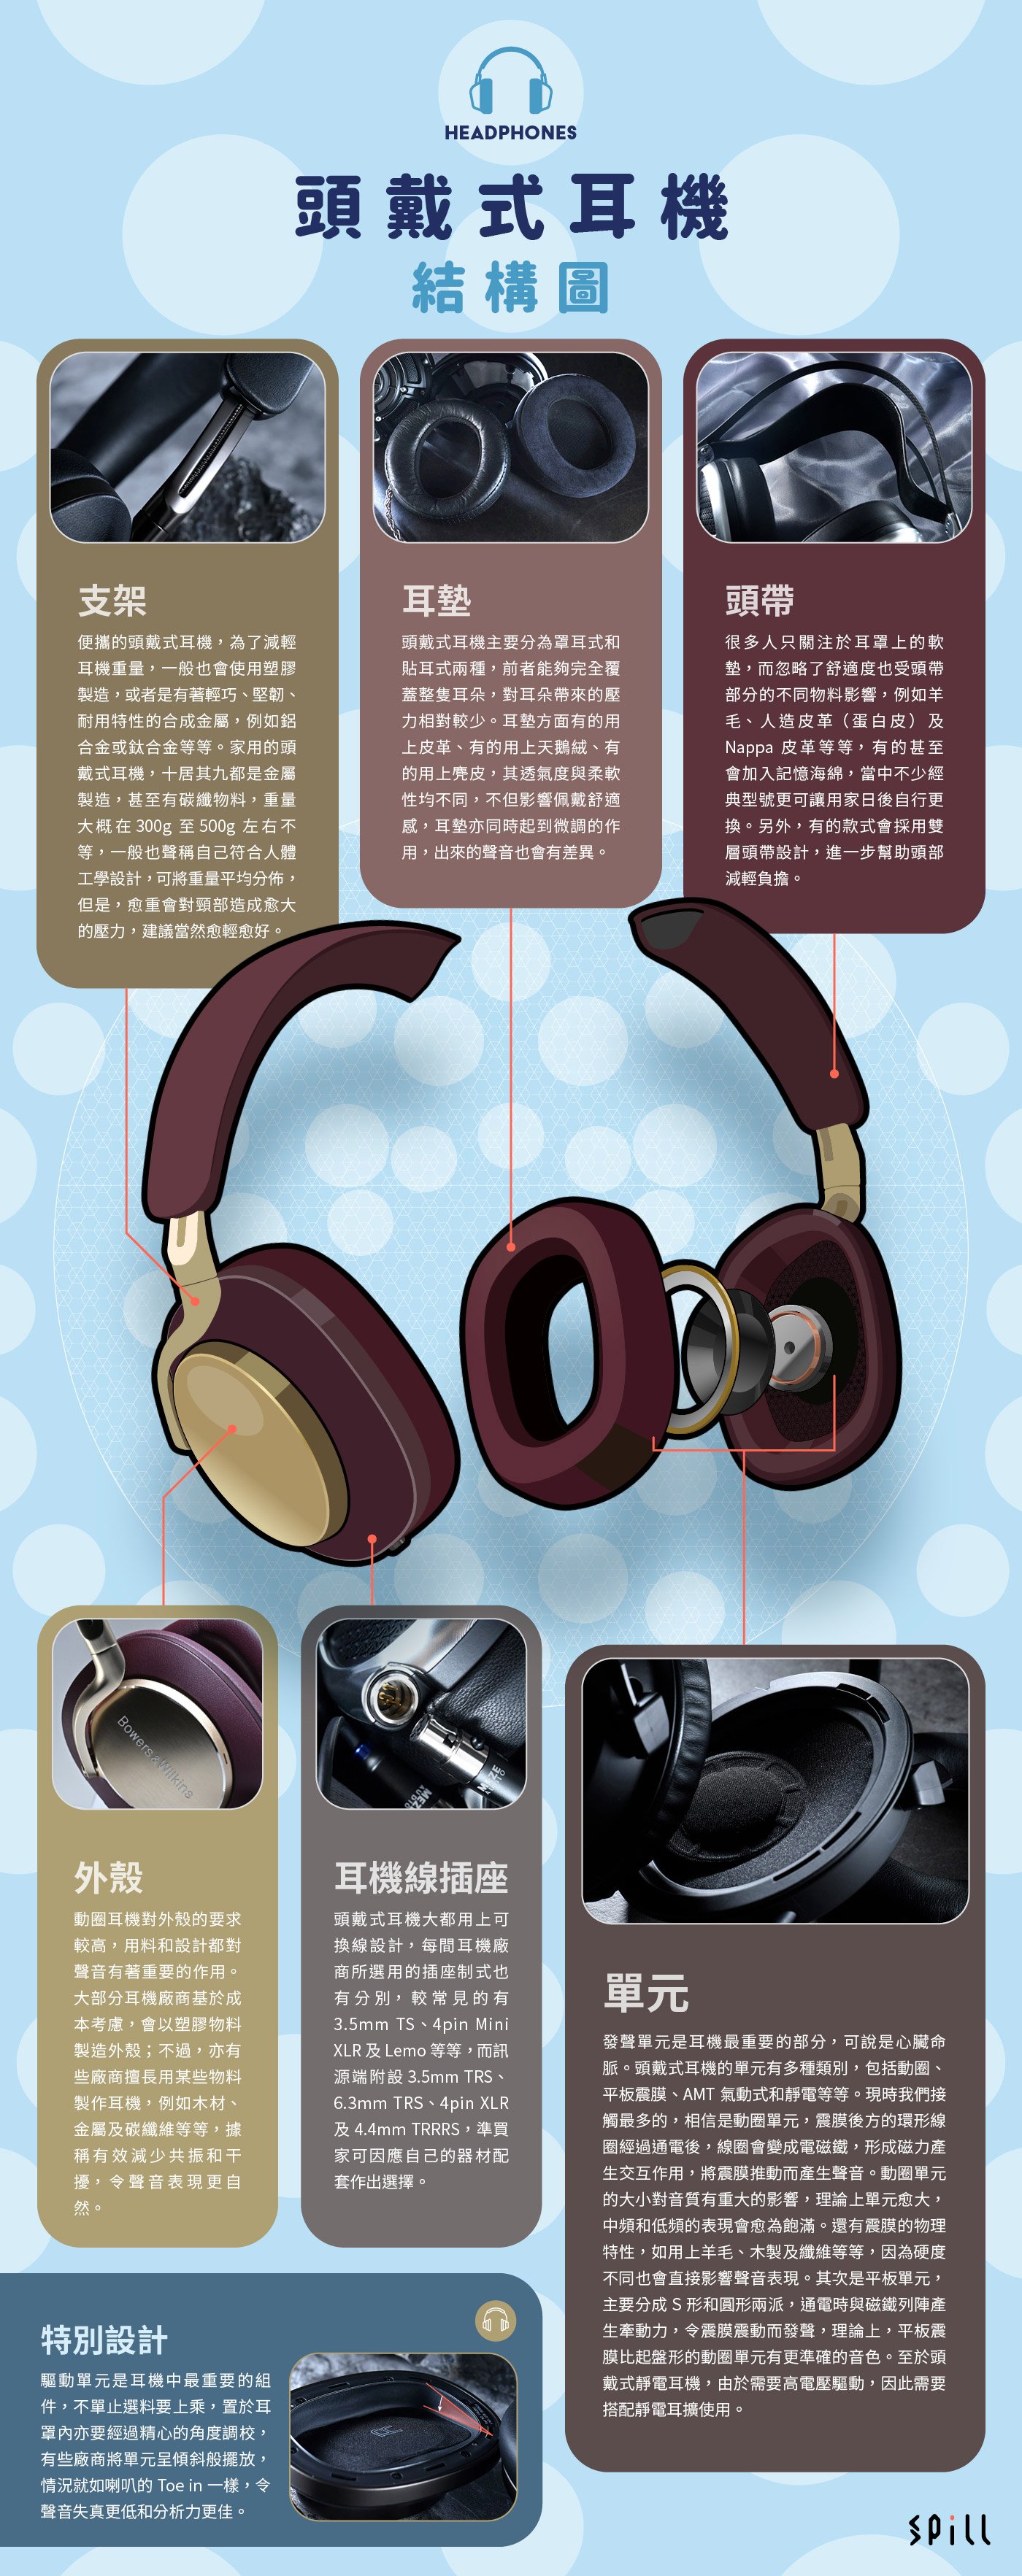 每款頭戴式耳機都有共通點，內裡的結構都是大同小異，但不同品牌、不同型號的頭戴式耳機都會有不同的設計。